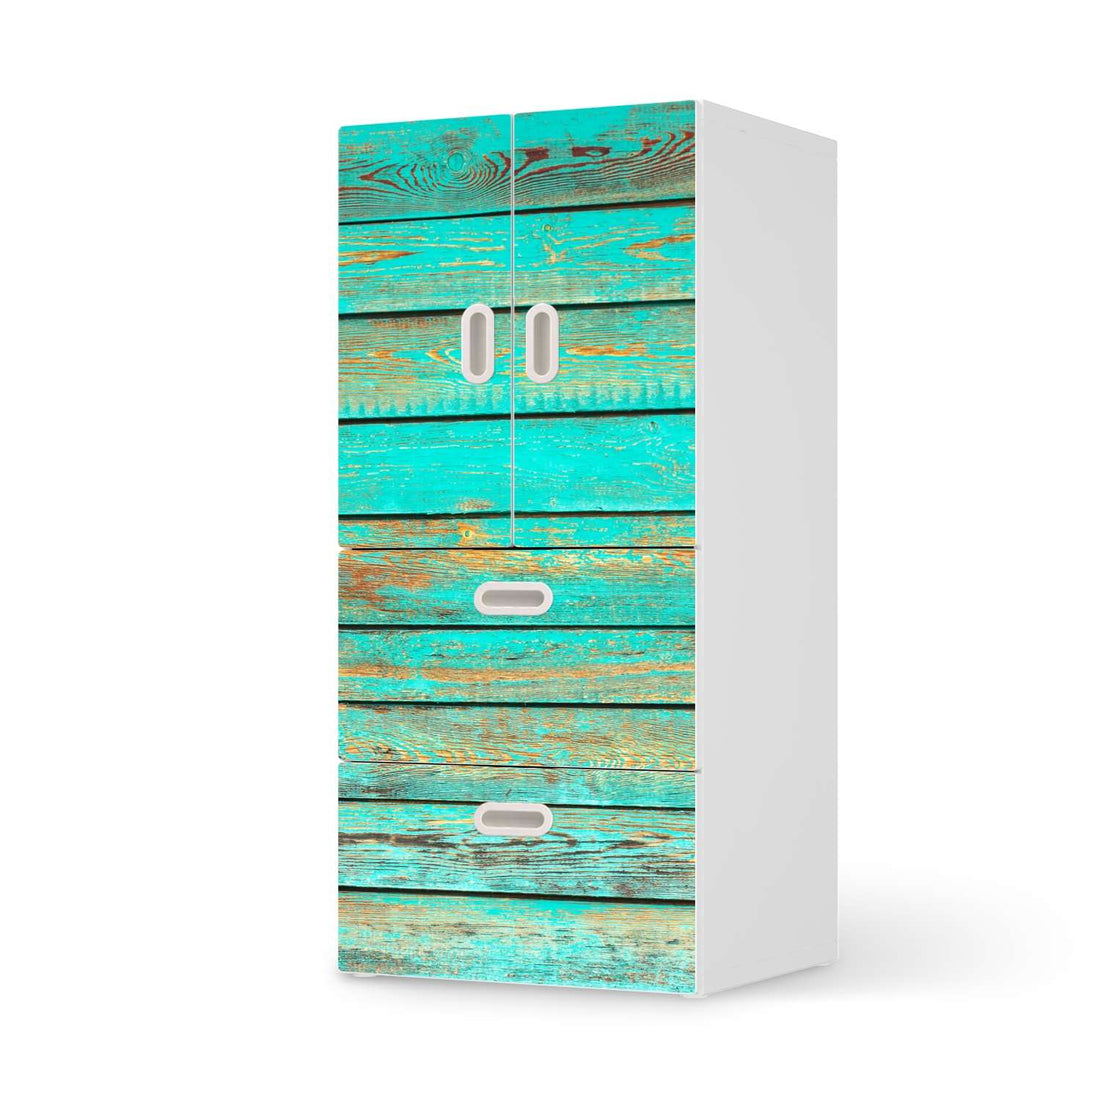 Möbelfolie Wooden Aqua - IKEA Stuva / Fritids kombiniert - 2 Schubladen und 2 kleine Türen  - weiss